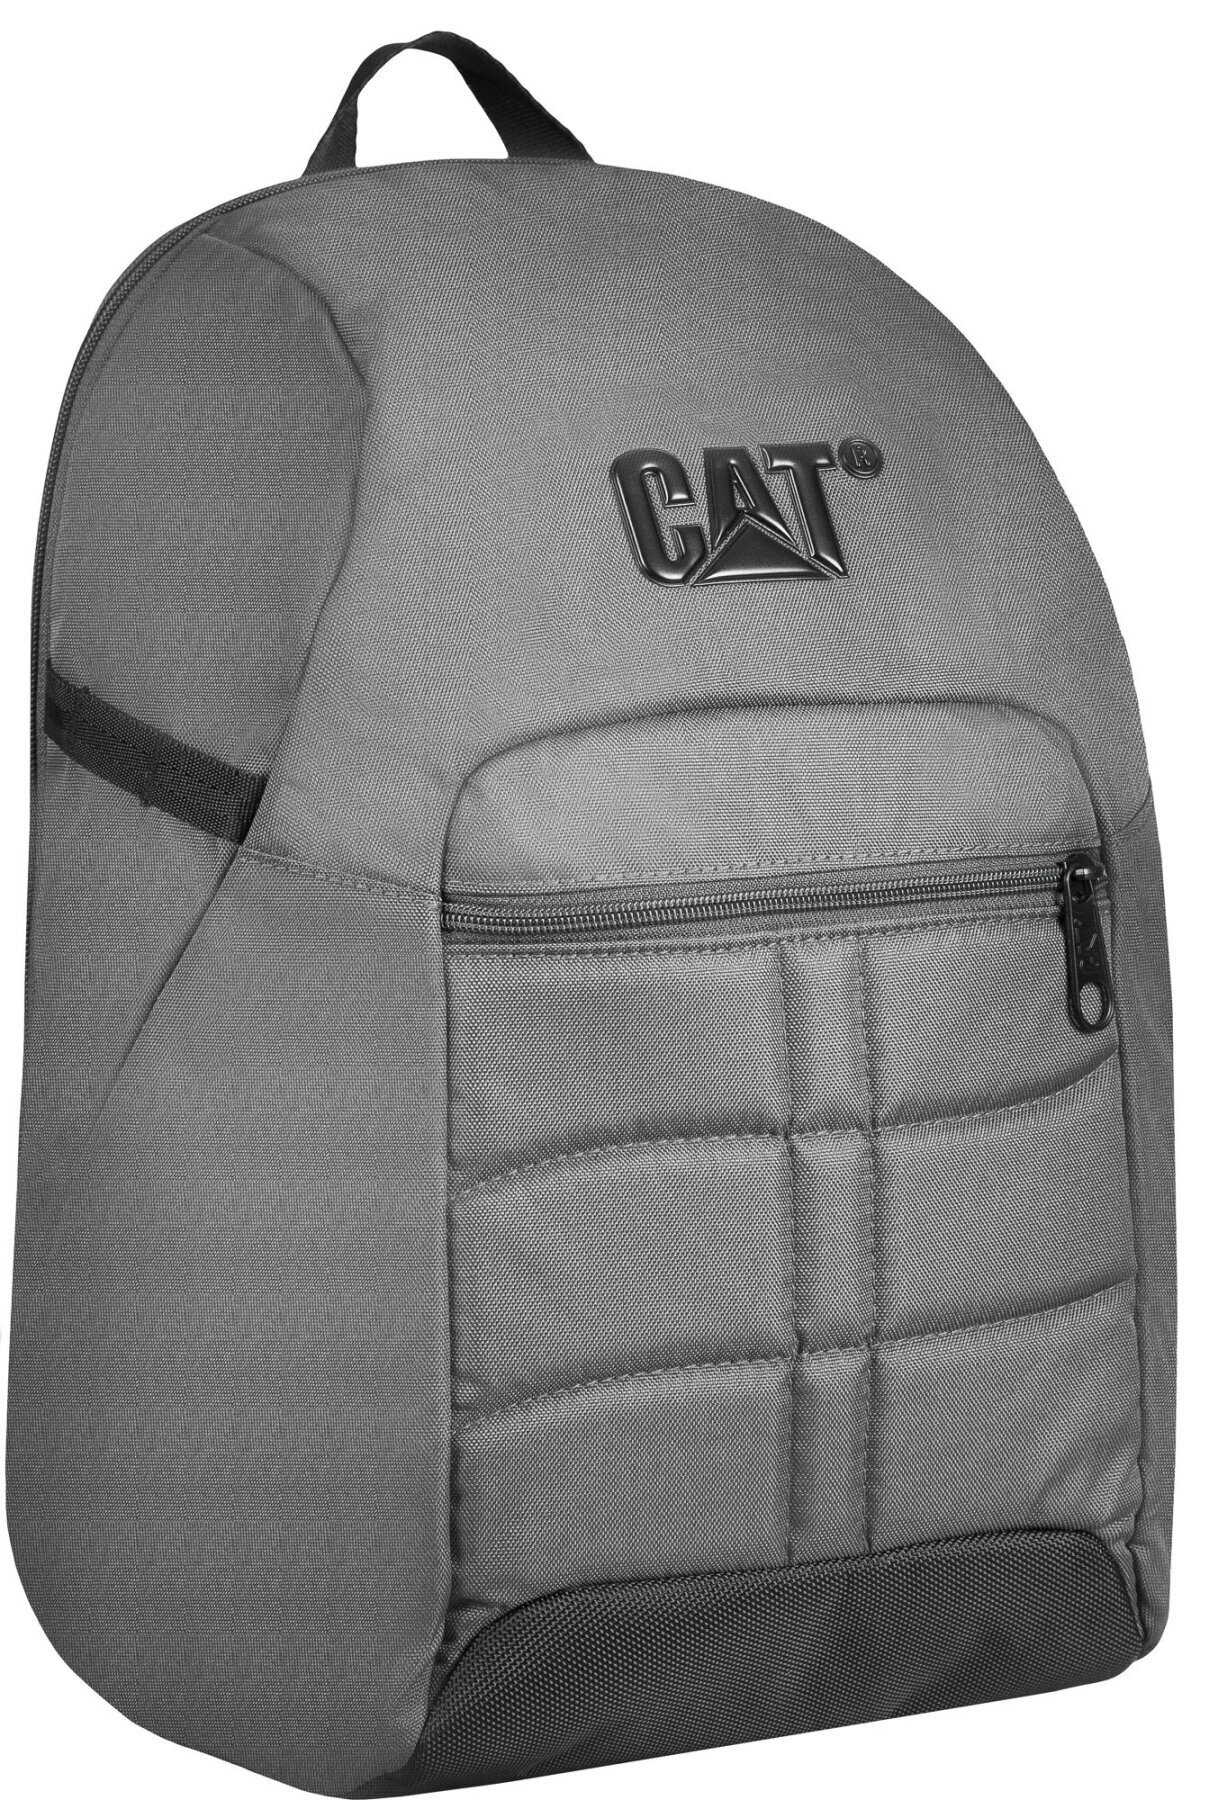 Рюкзак повсякденний (Міський) з відділенням для ноутбука CAT Millennial Ultimate Protect 83523;99 темно-сірий